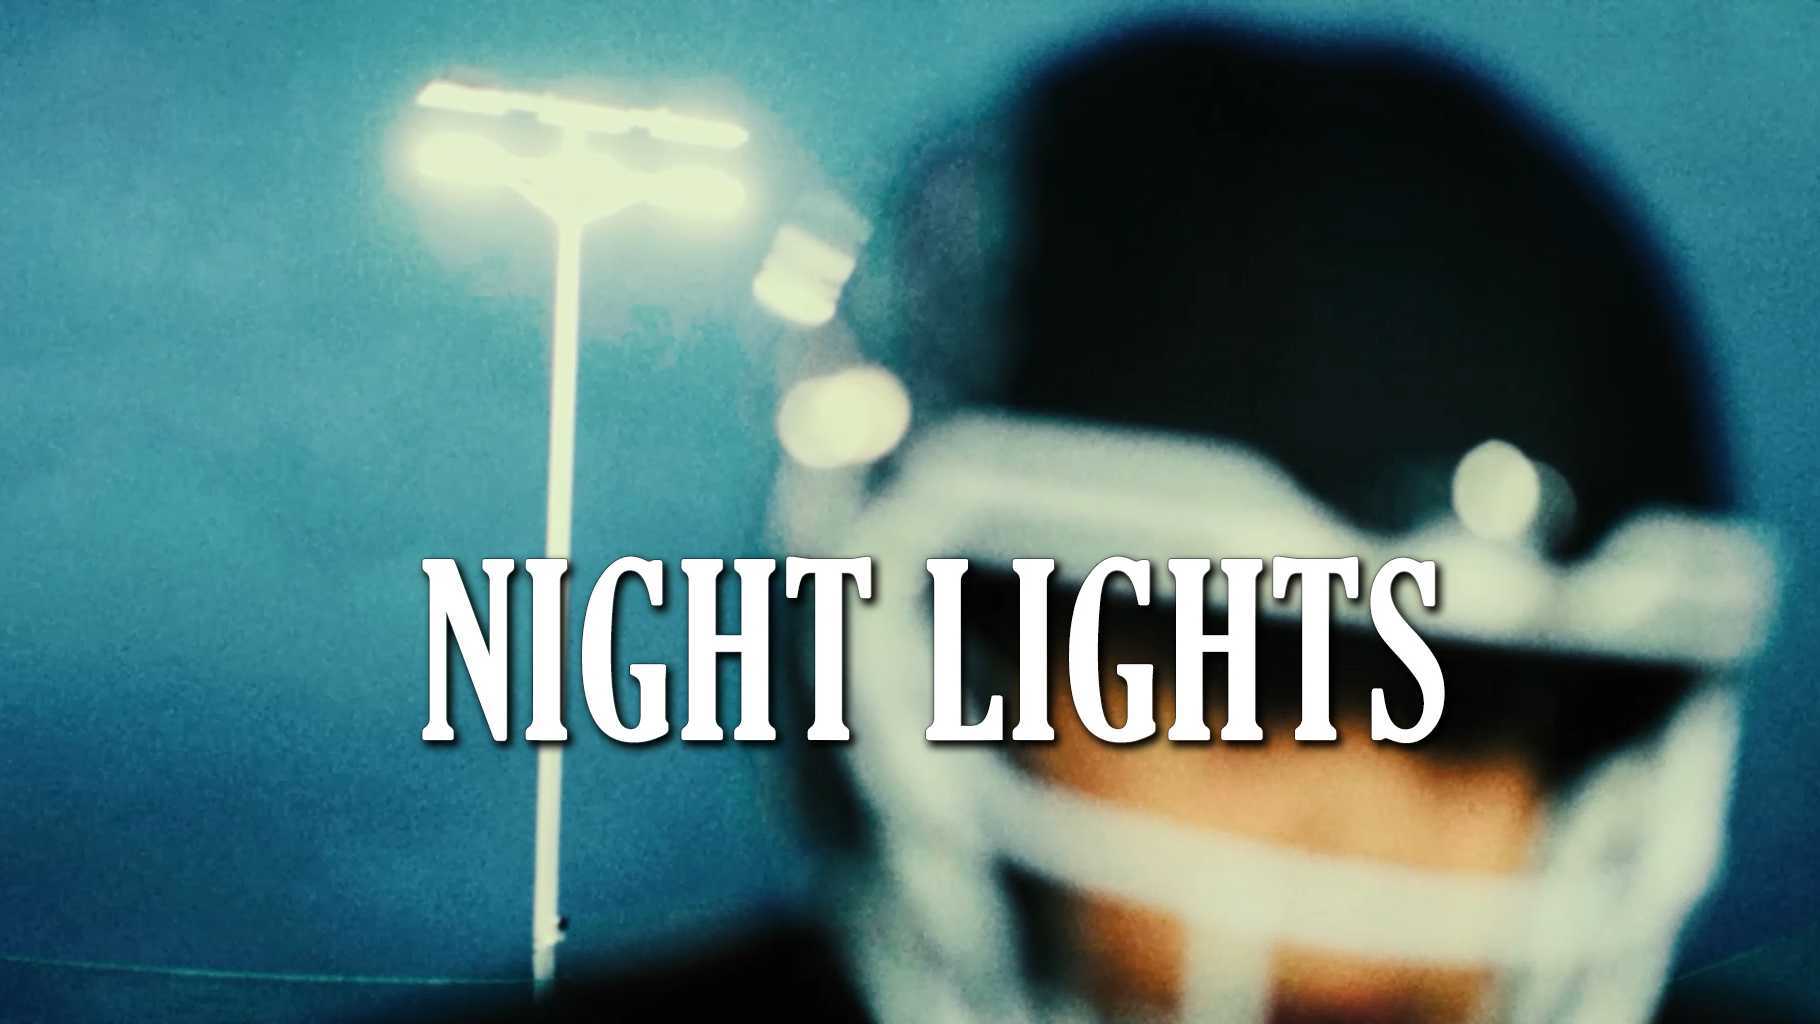 【NIGHT LIGHTS】夜空中的每一盏灯都为梦想而点亮。夜鹰2022短片